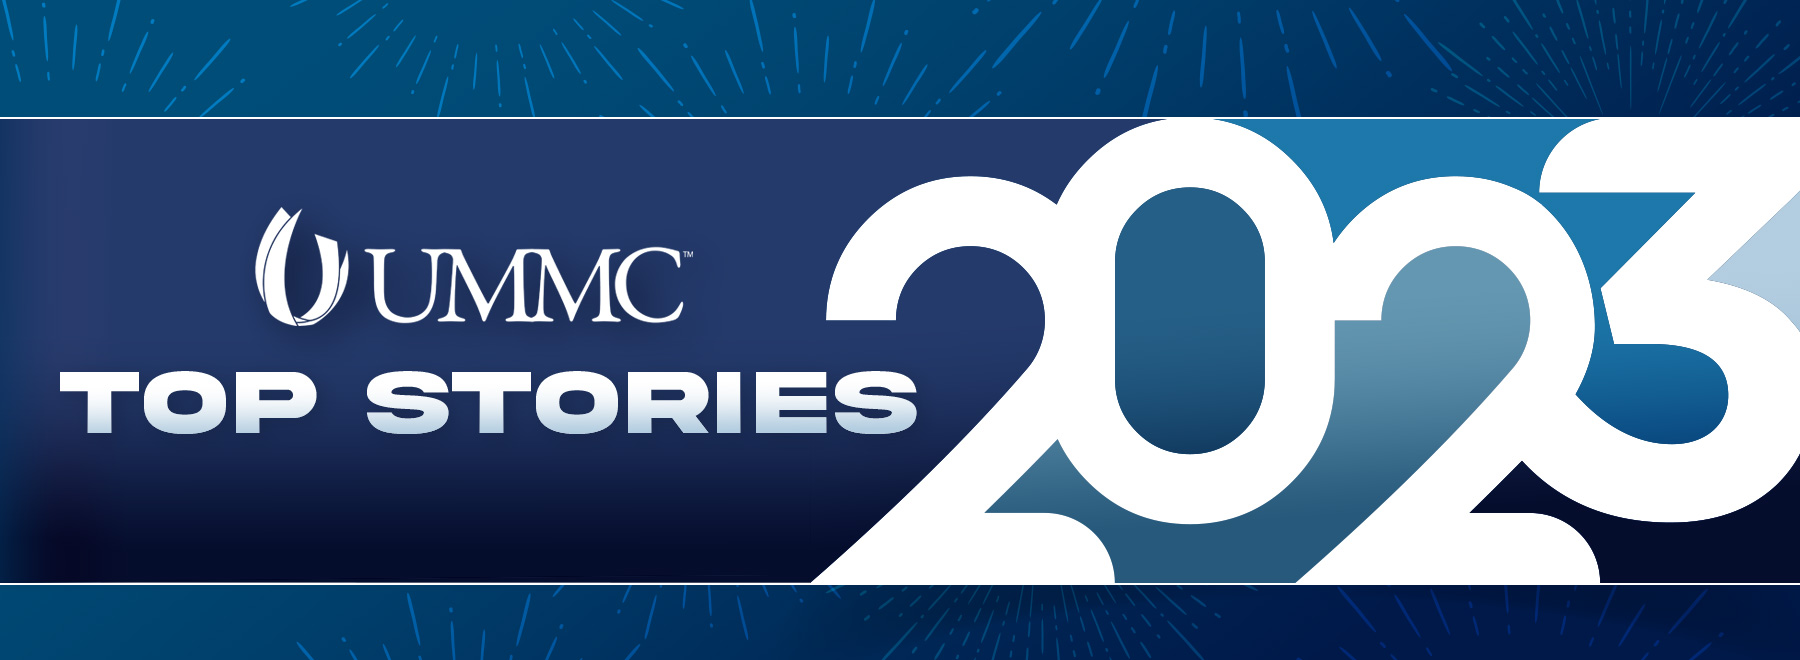 UMMC Top Stories 2023